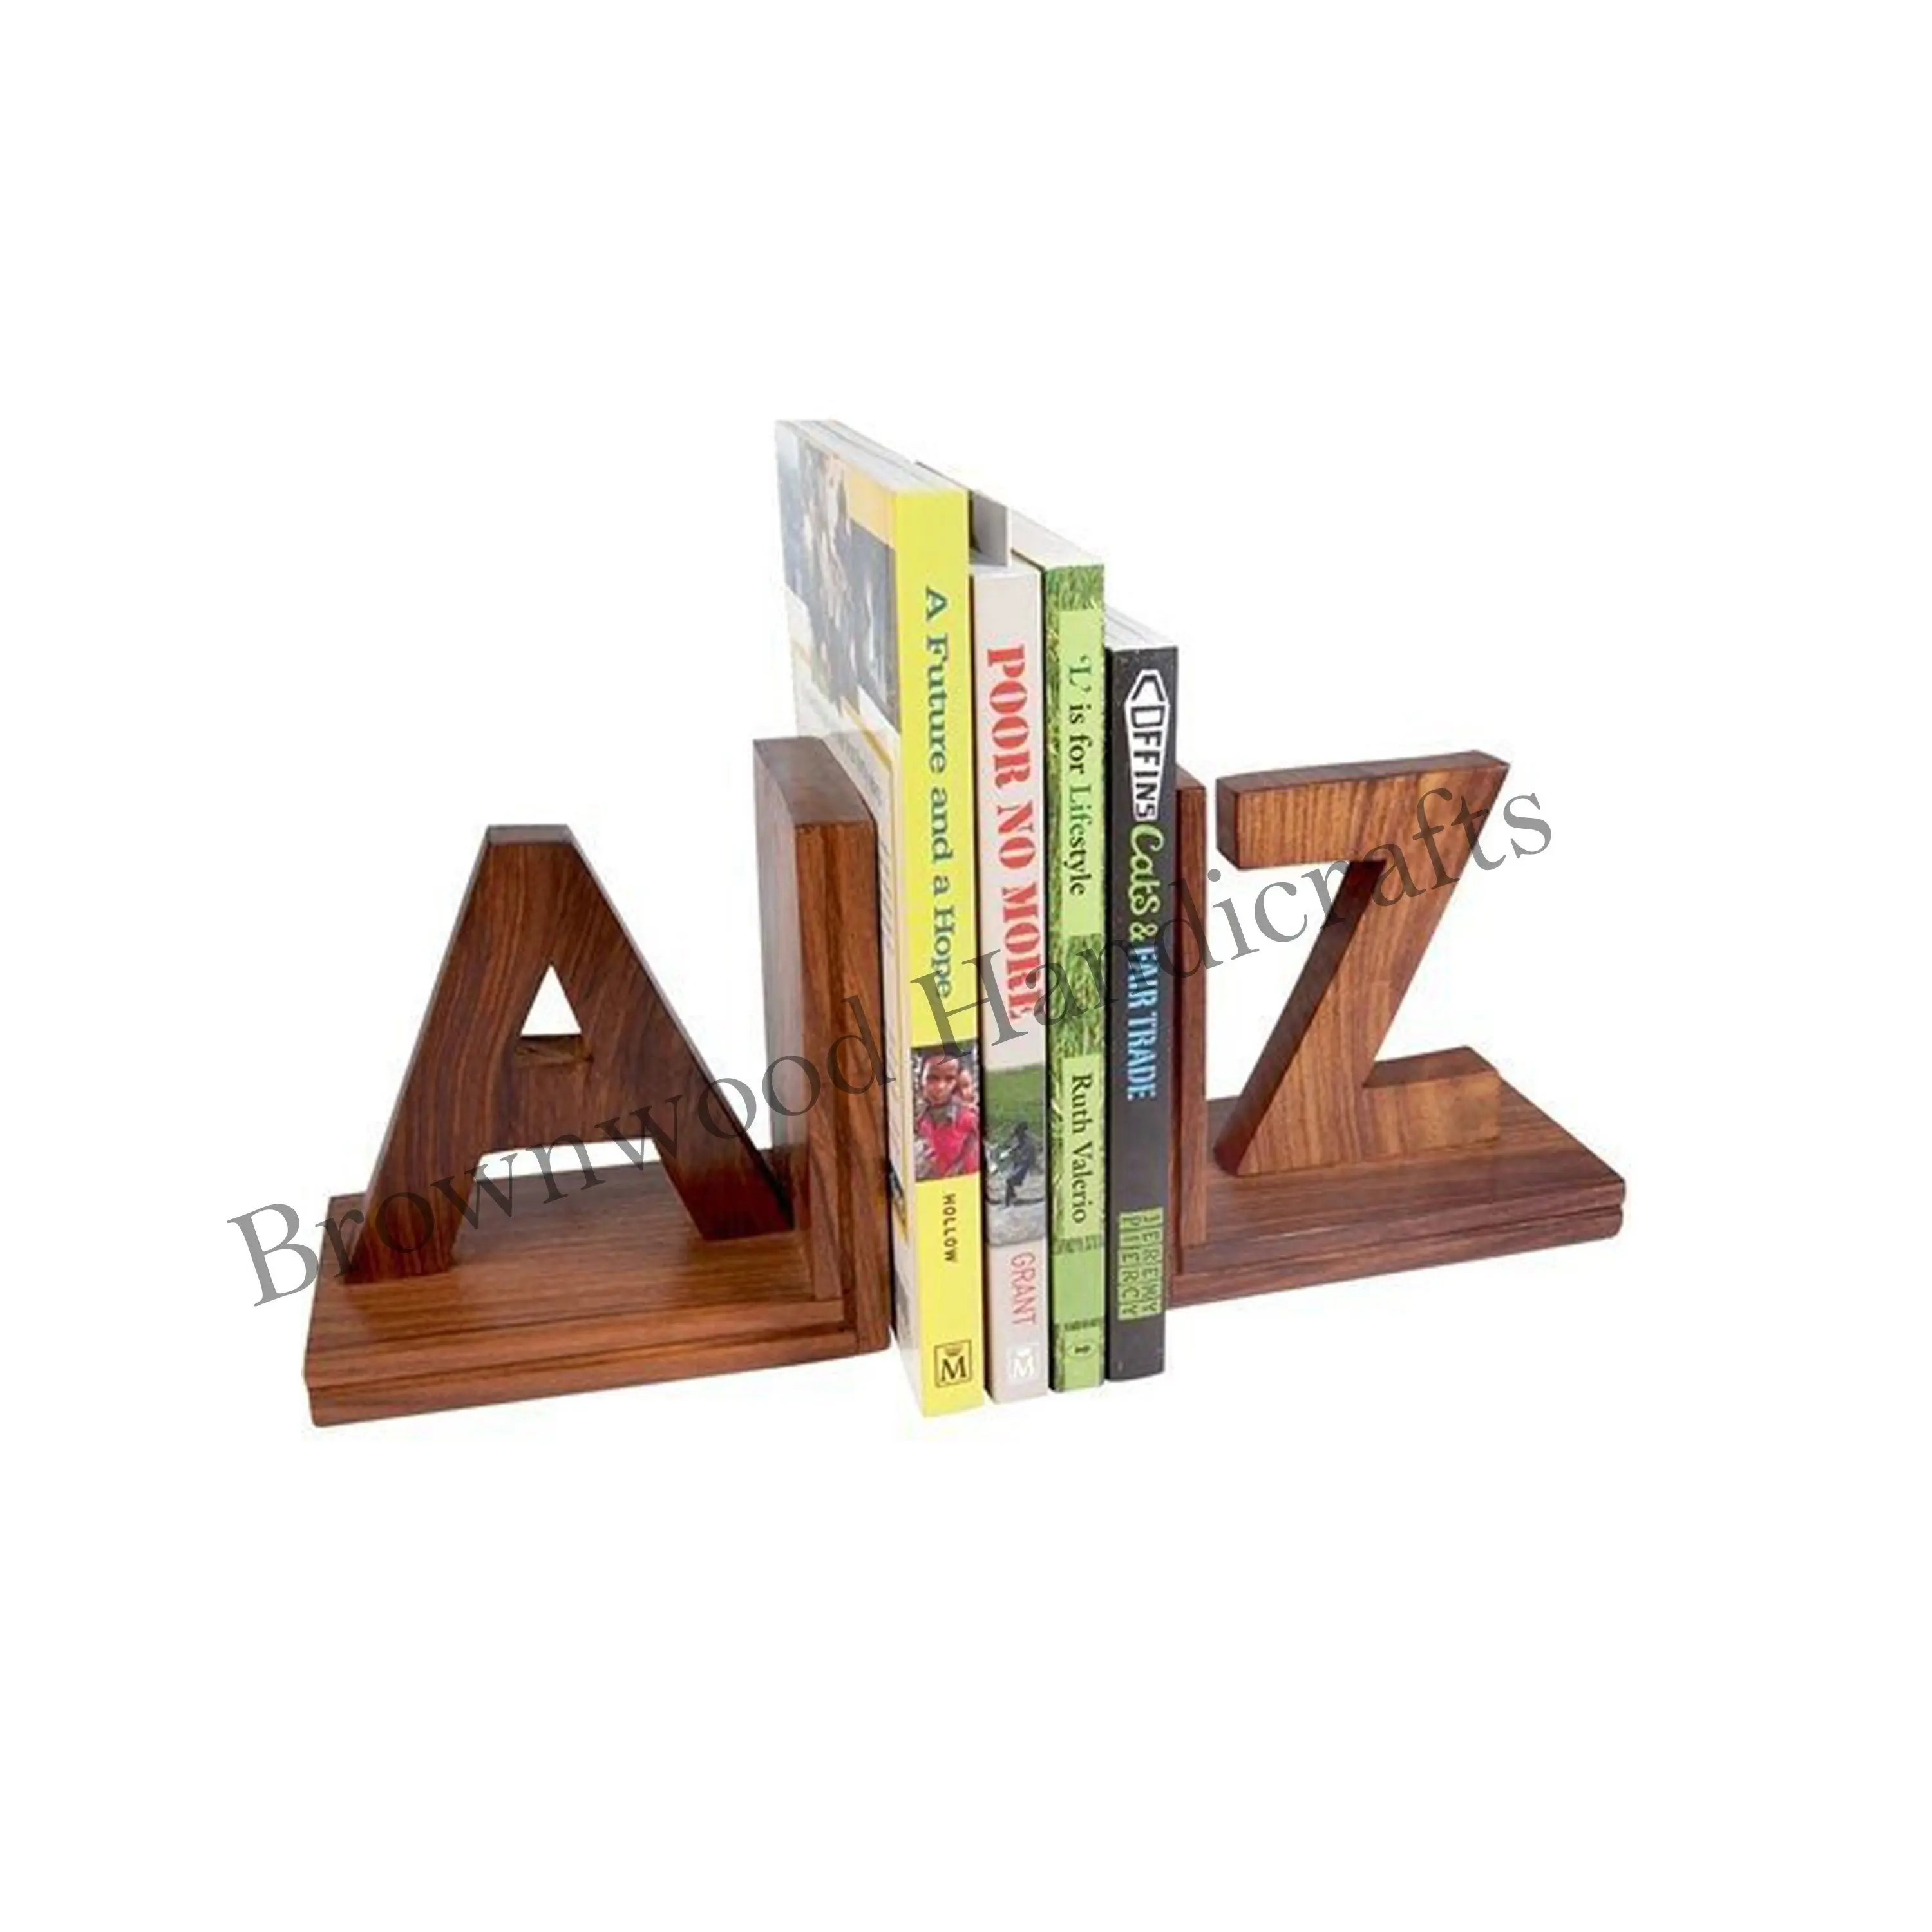 맞춤형 나무 수제 알파벳 편지 공부 책상 장식 및 도서관 사용을 위해 만든 나무 책 홀더 도매 가격